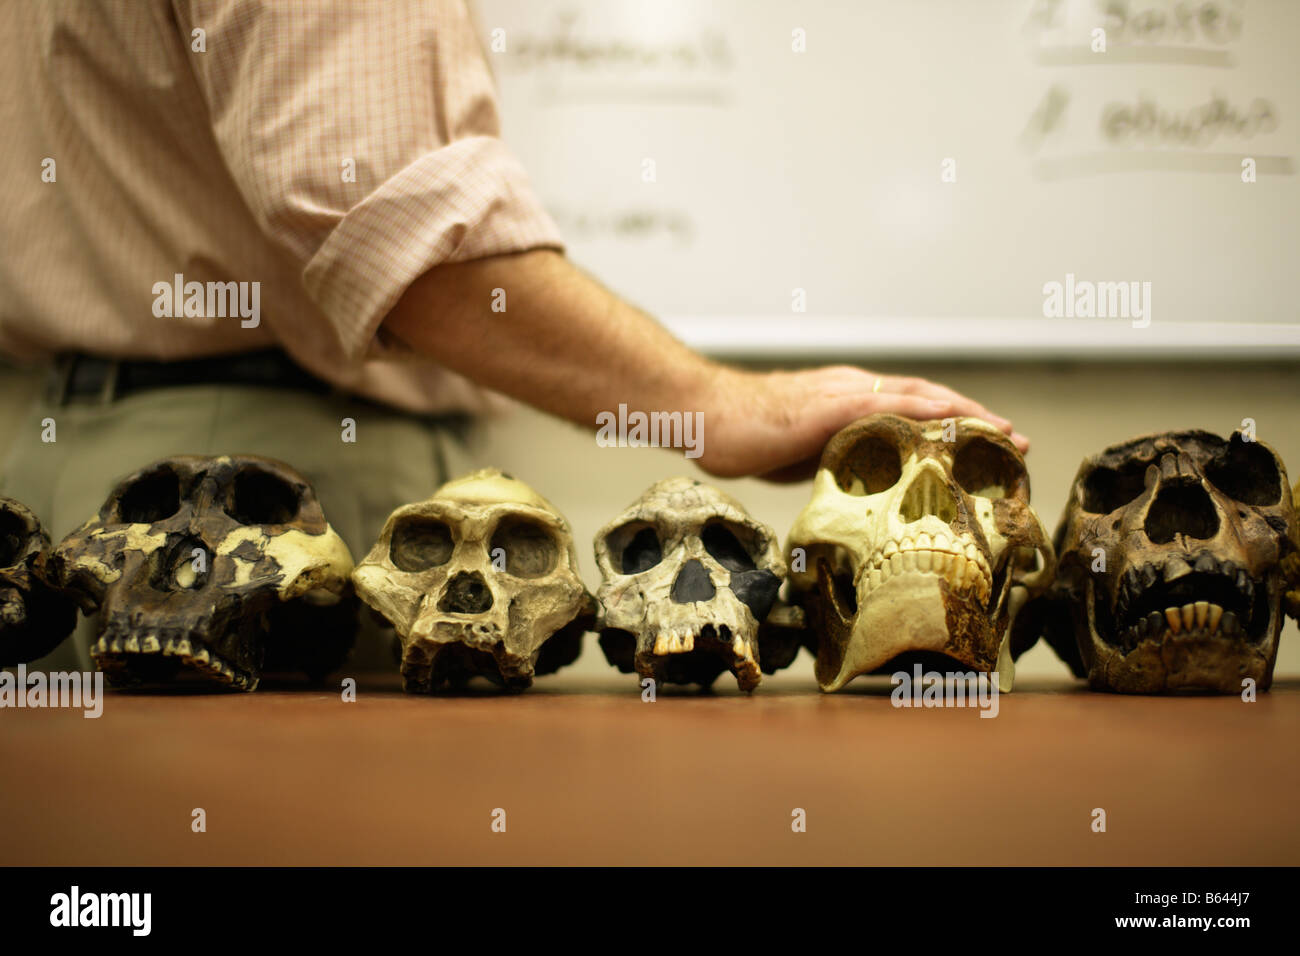 El hombre enseñando la evolución humana con modelos de cráneos de ancestros humanos Foto de stock